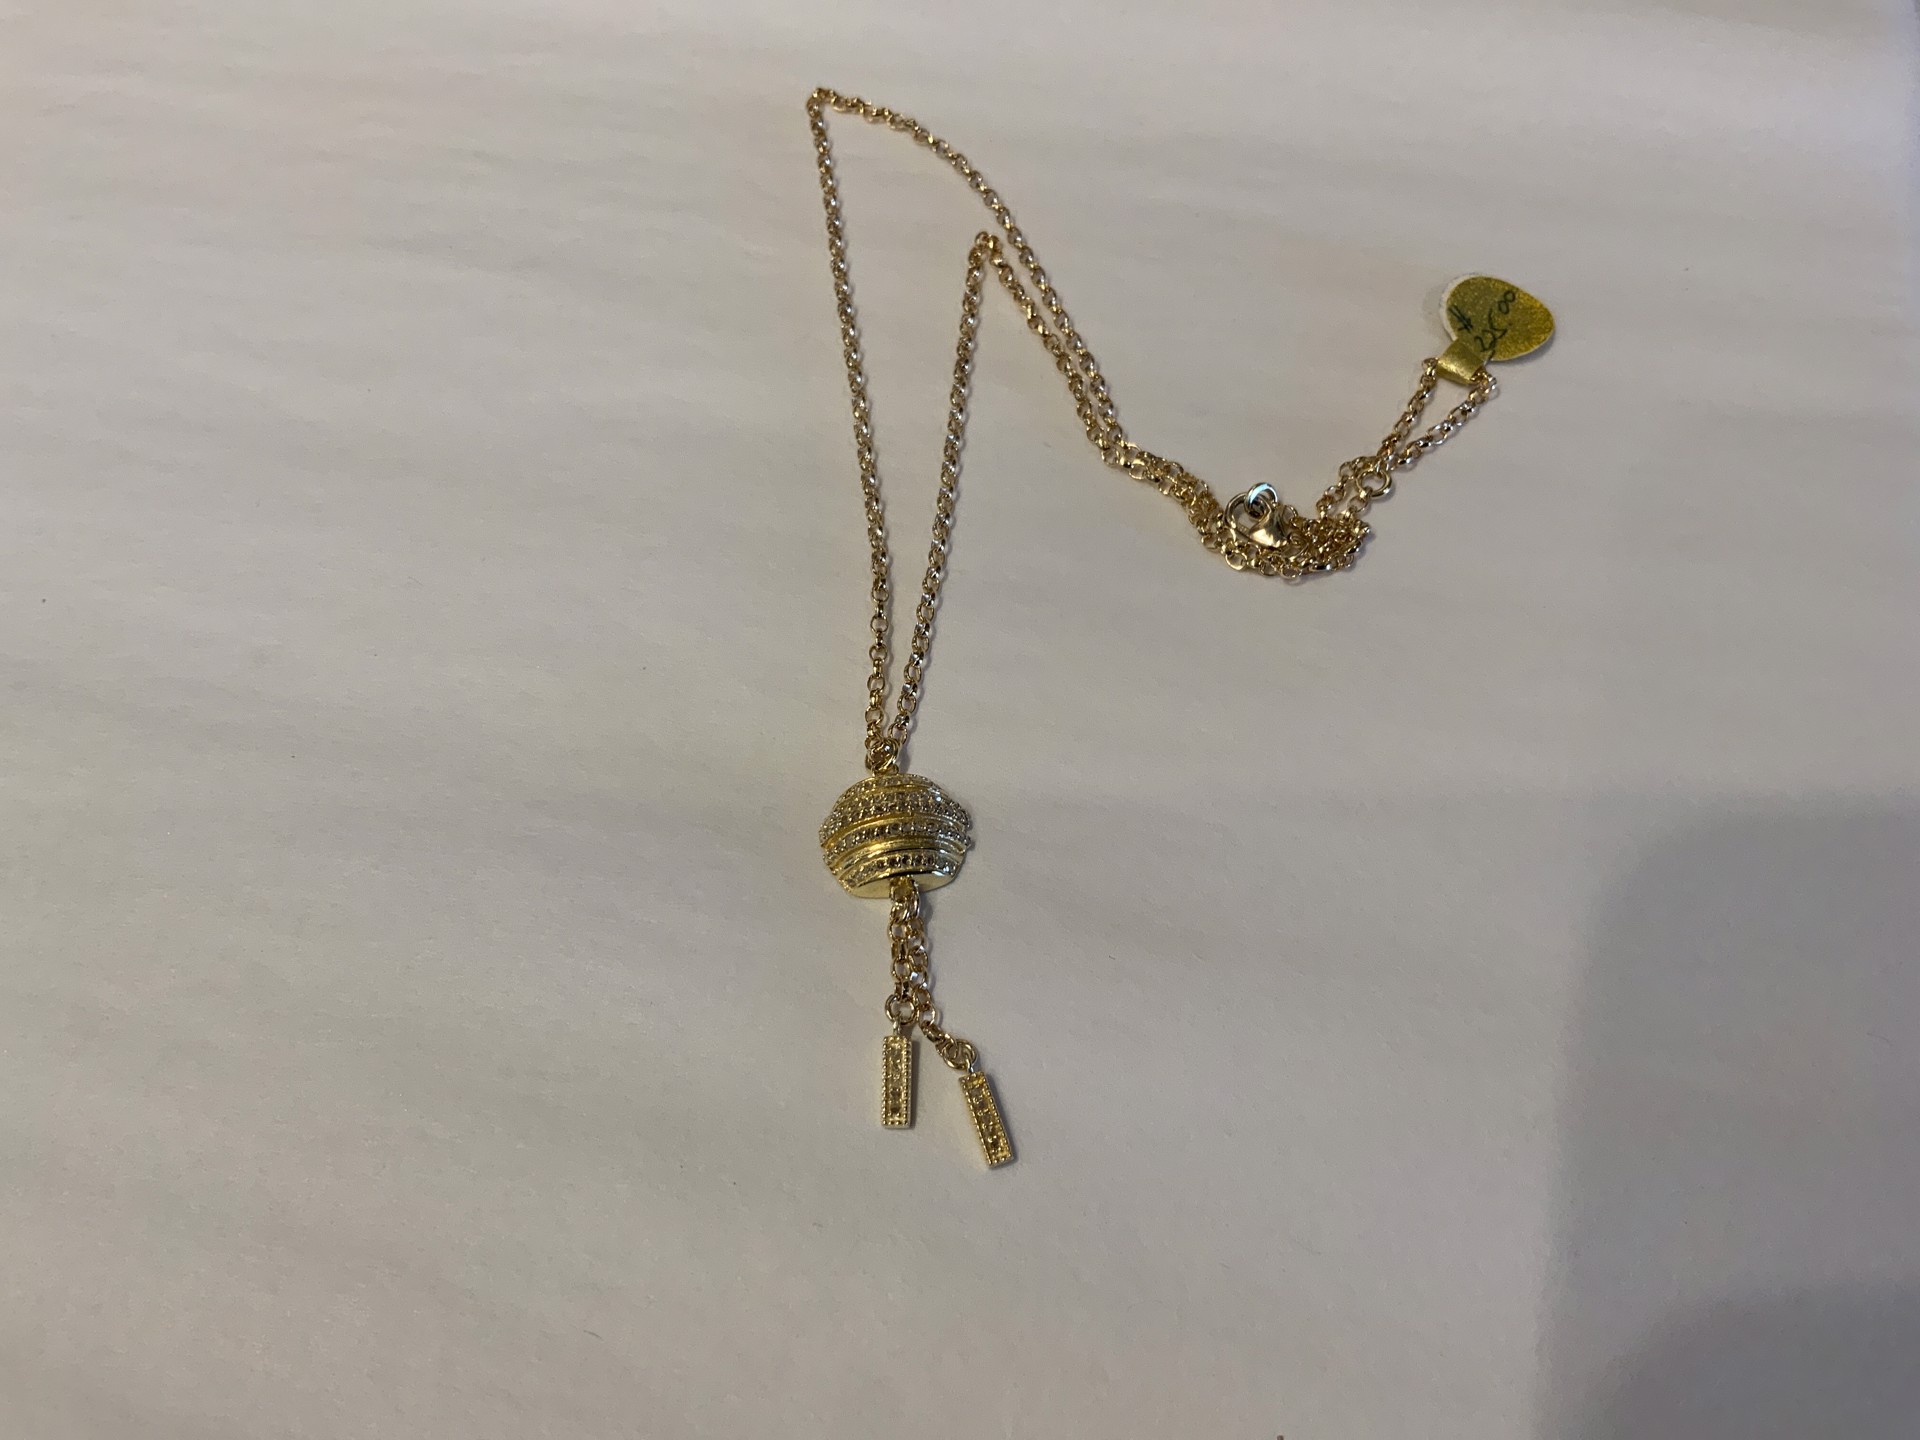 Gold Vermeil and Pave Diamond Drop Necklace by Karen Birchmier